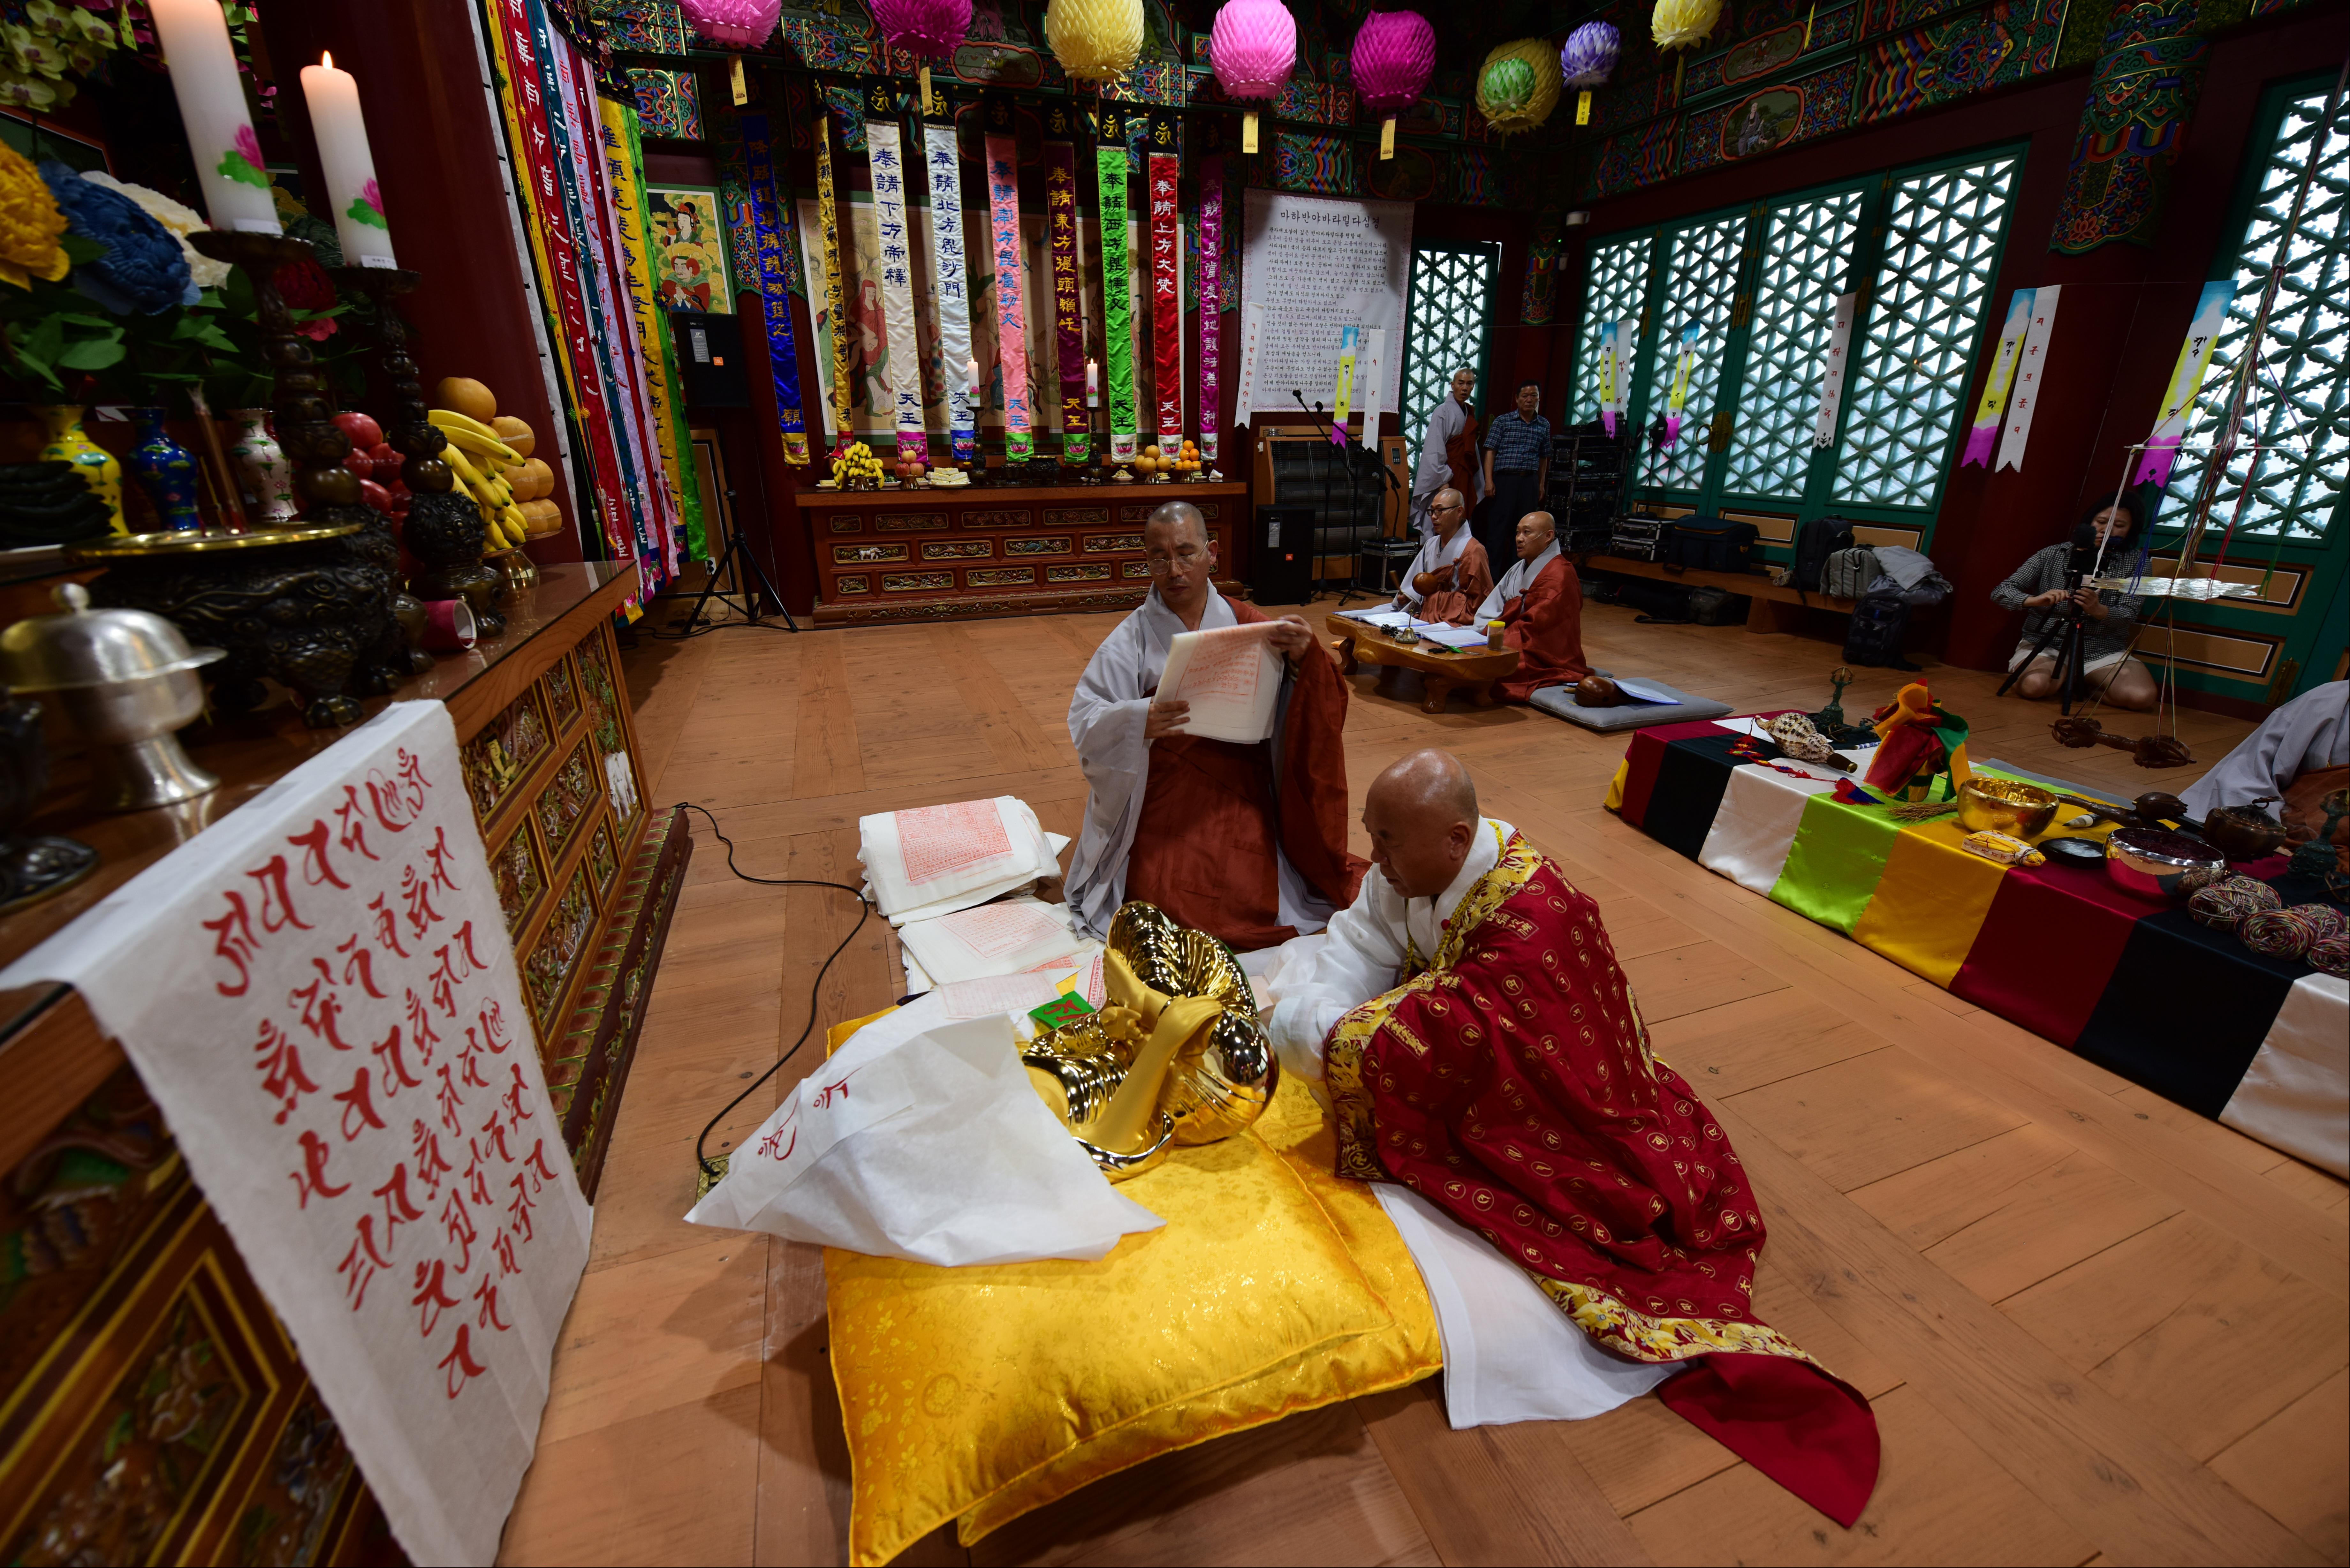 승려들이 불상이나 불화에 불교 물품을 봉안하는 의식인 ‘불복장작법’을 행하는 모습